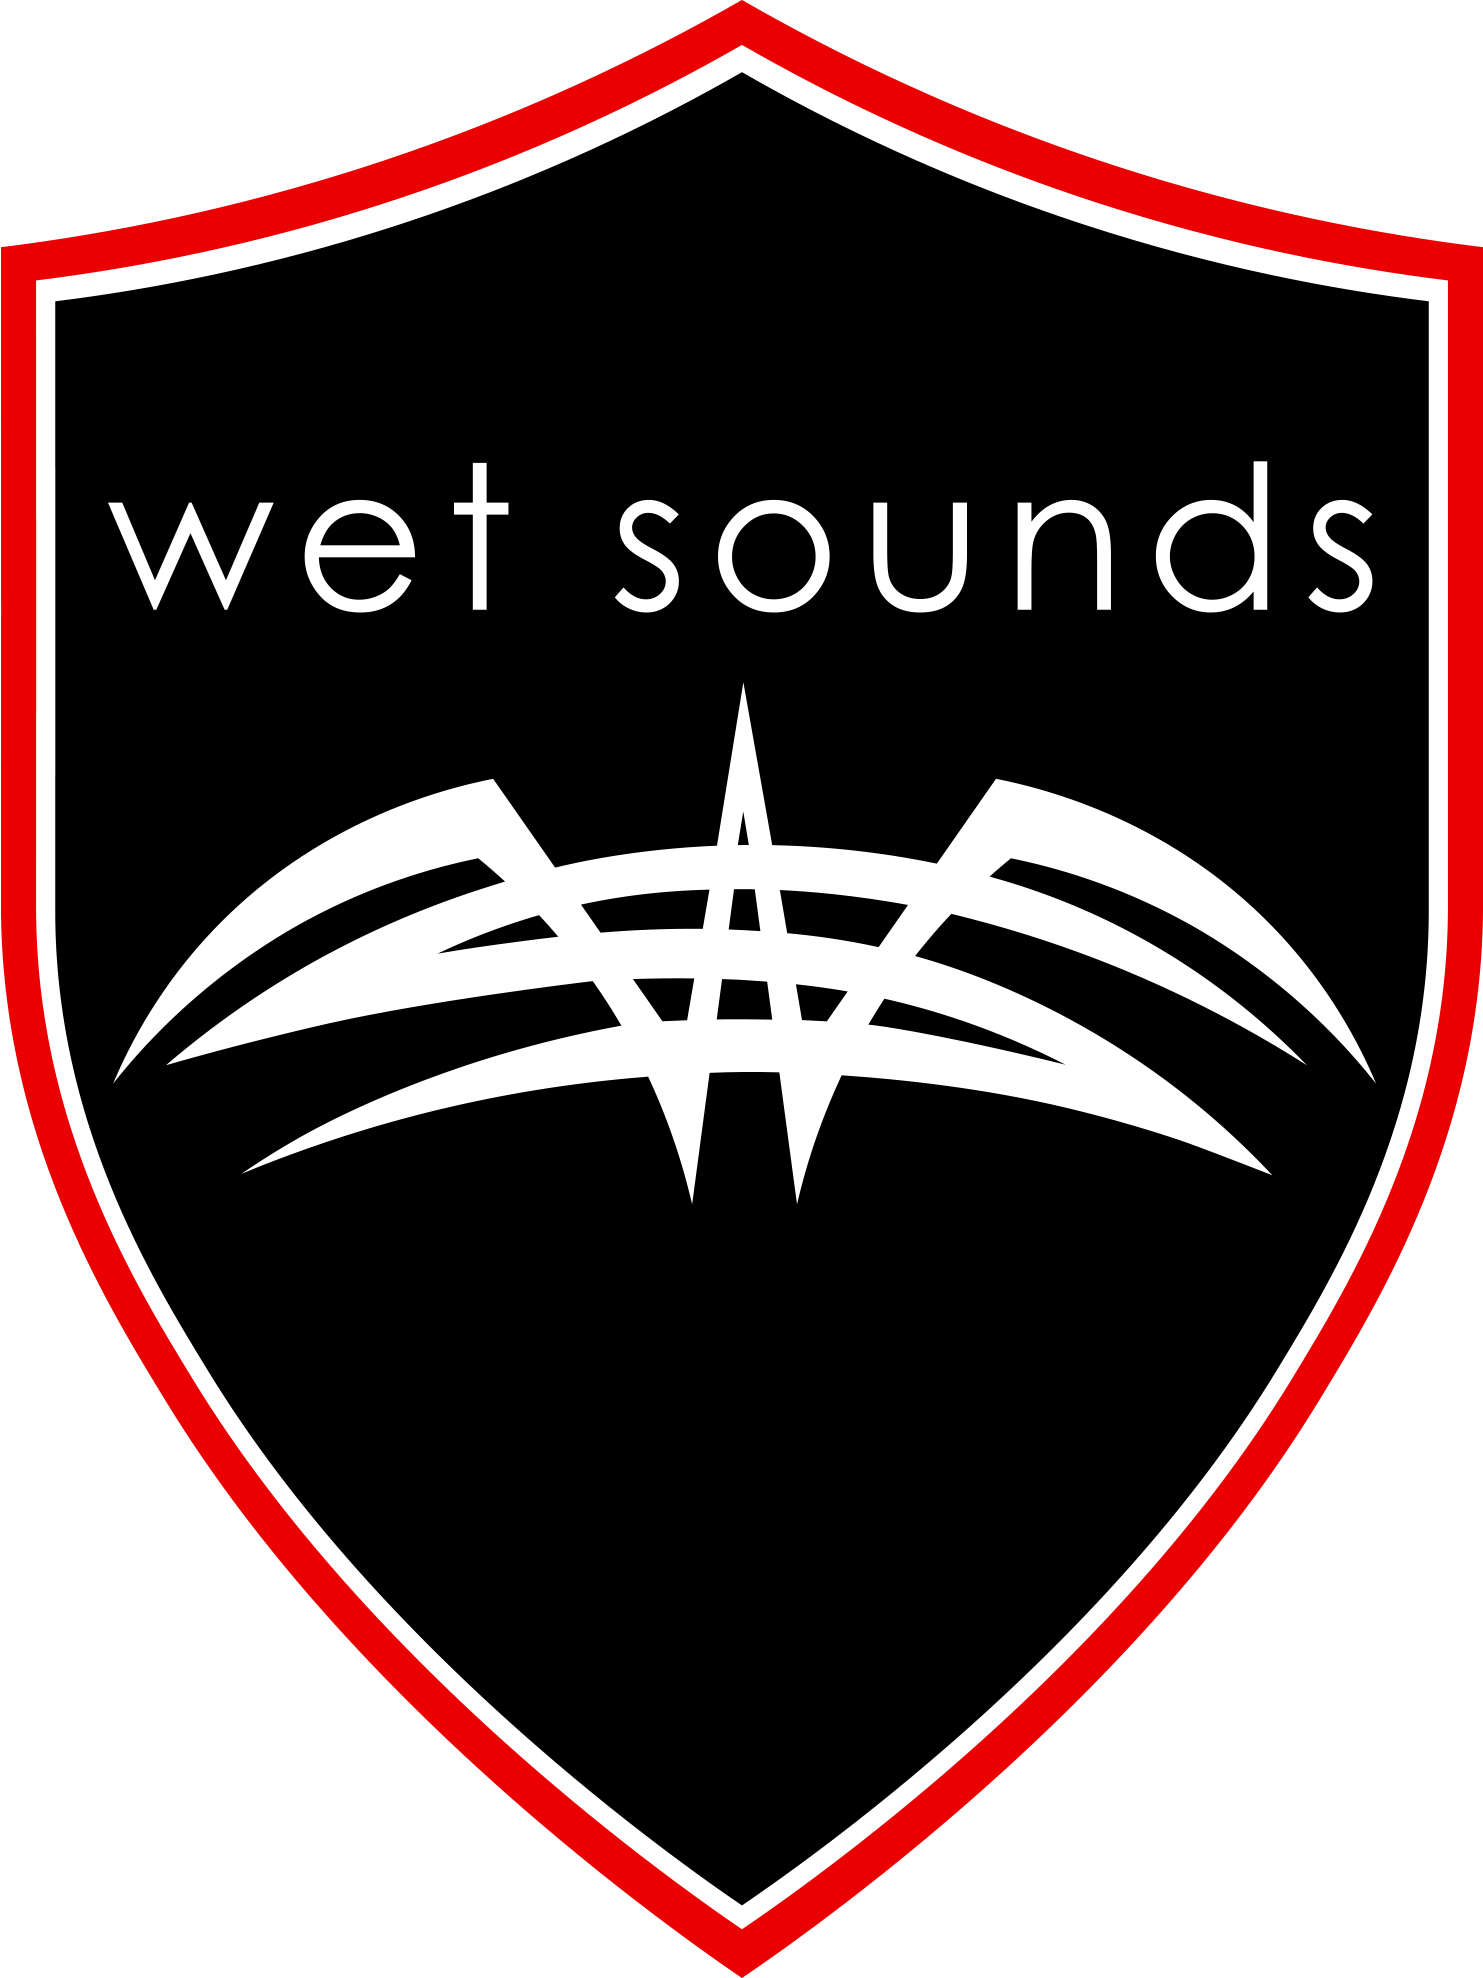 www.wetsounds.com